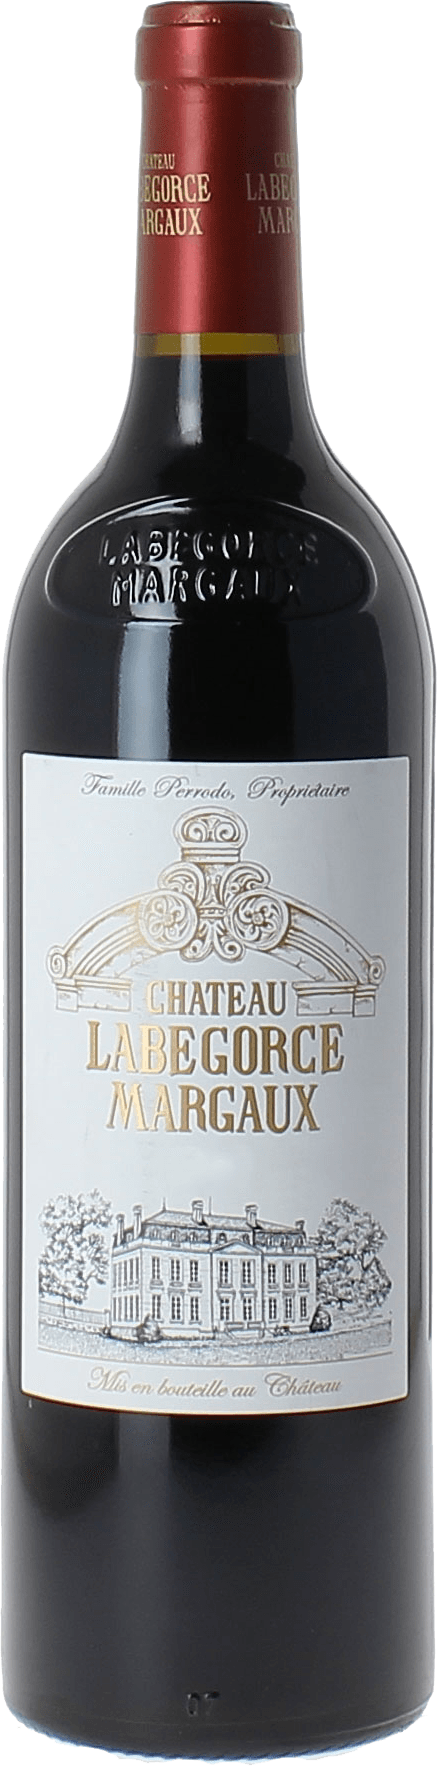 Labegorce- zede 2014  Margaux, Bordeaux rouge